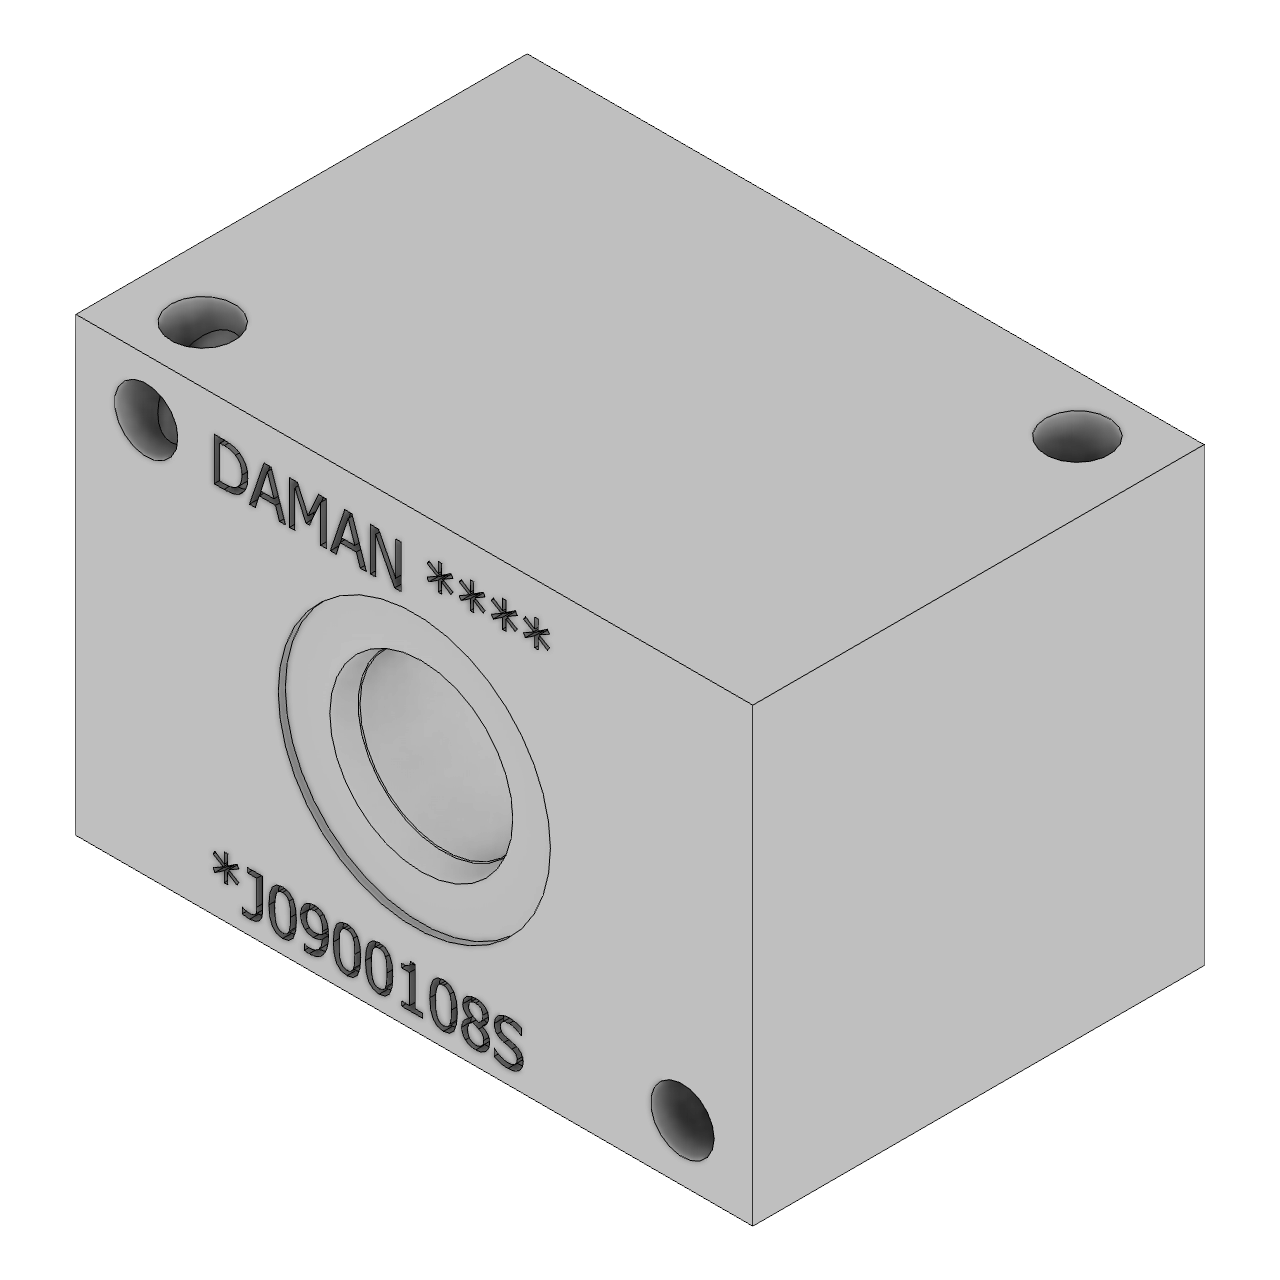 DJ0900108S - Header and Junction Blocks